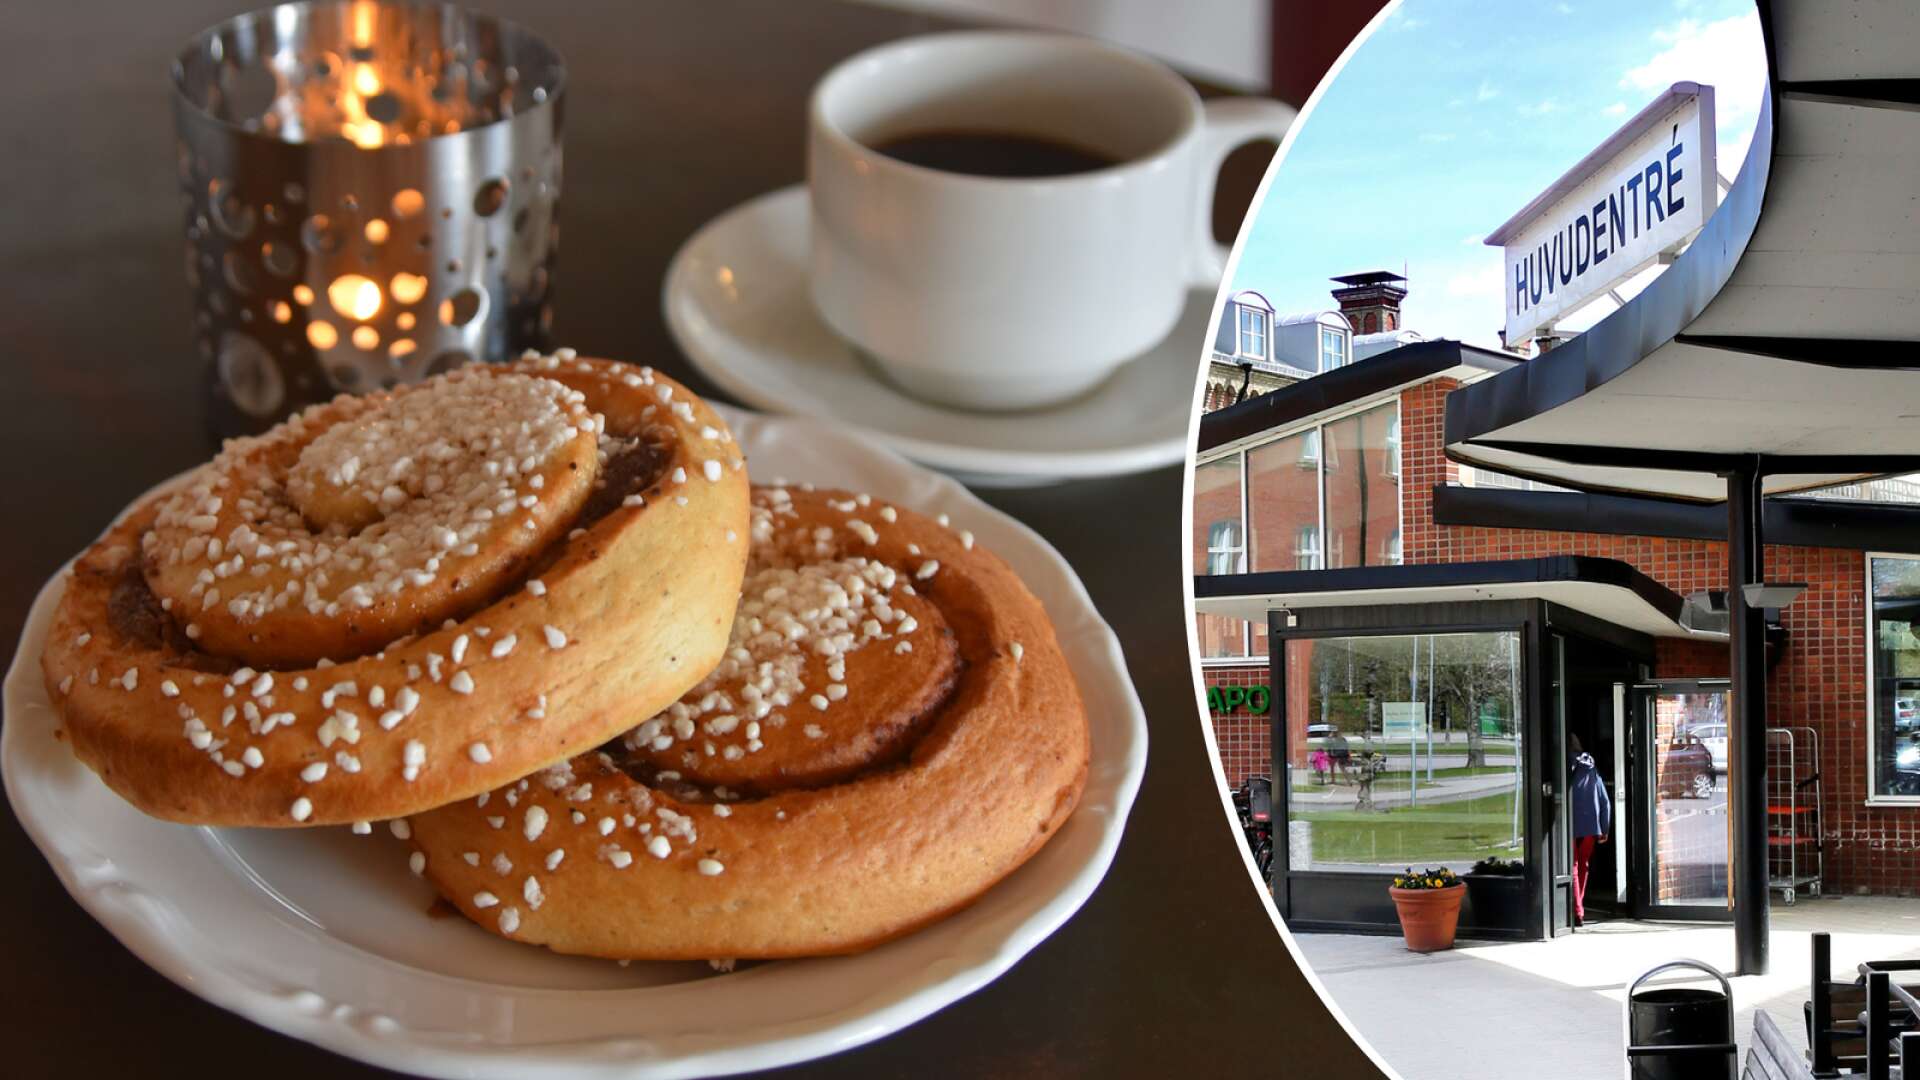 Så blir det med kafé och kiosk på sjukhuset i Lidköping: ”Kommer att ta några månader”